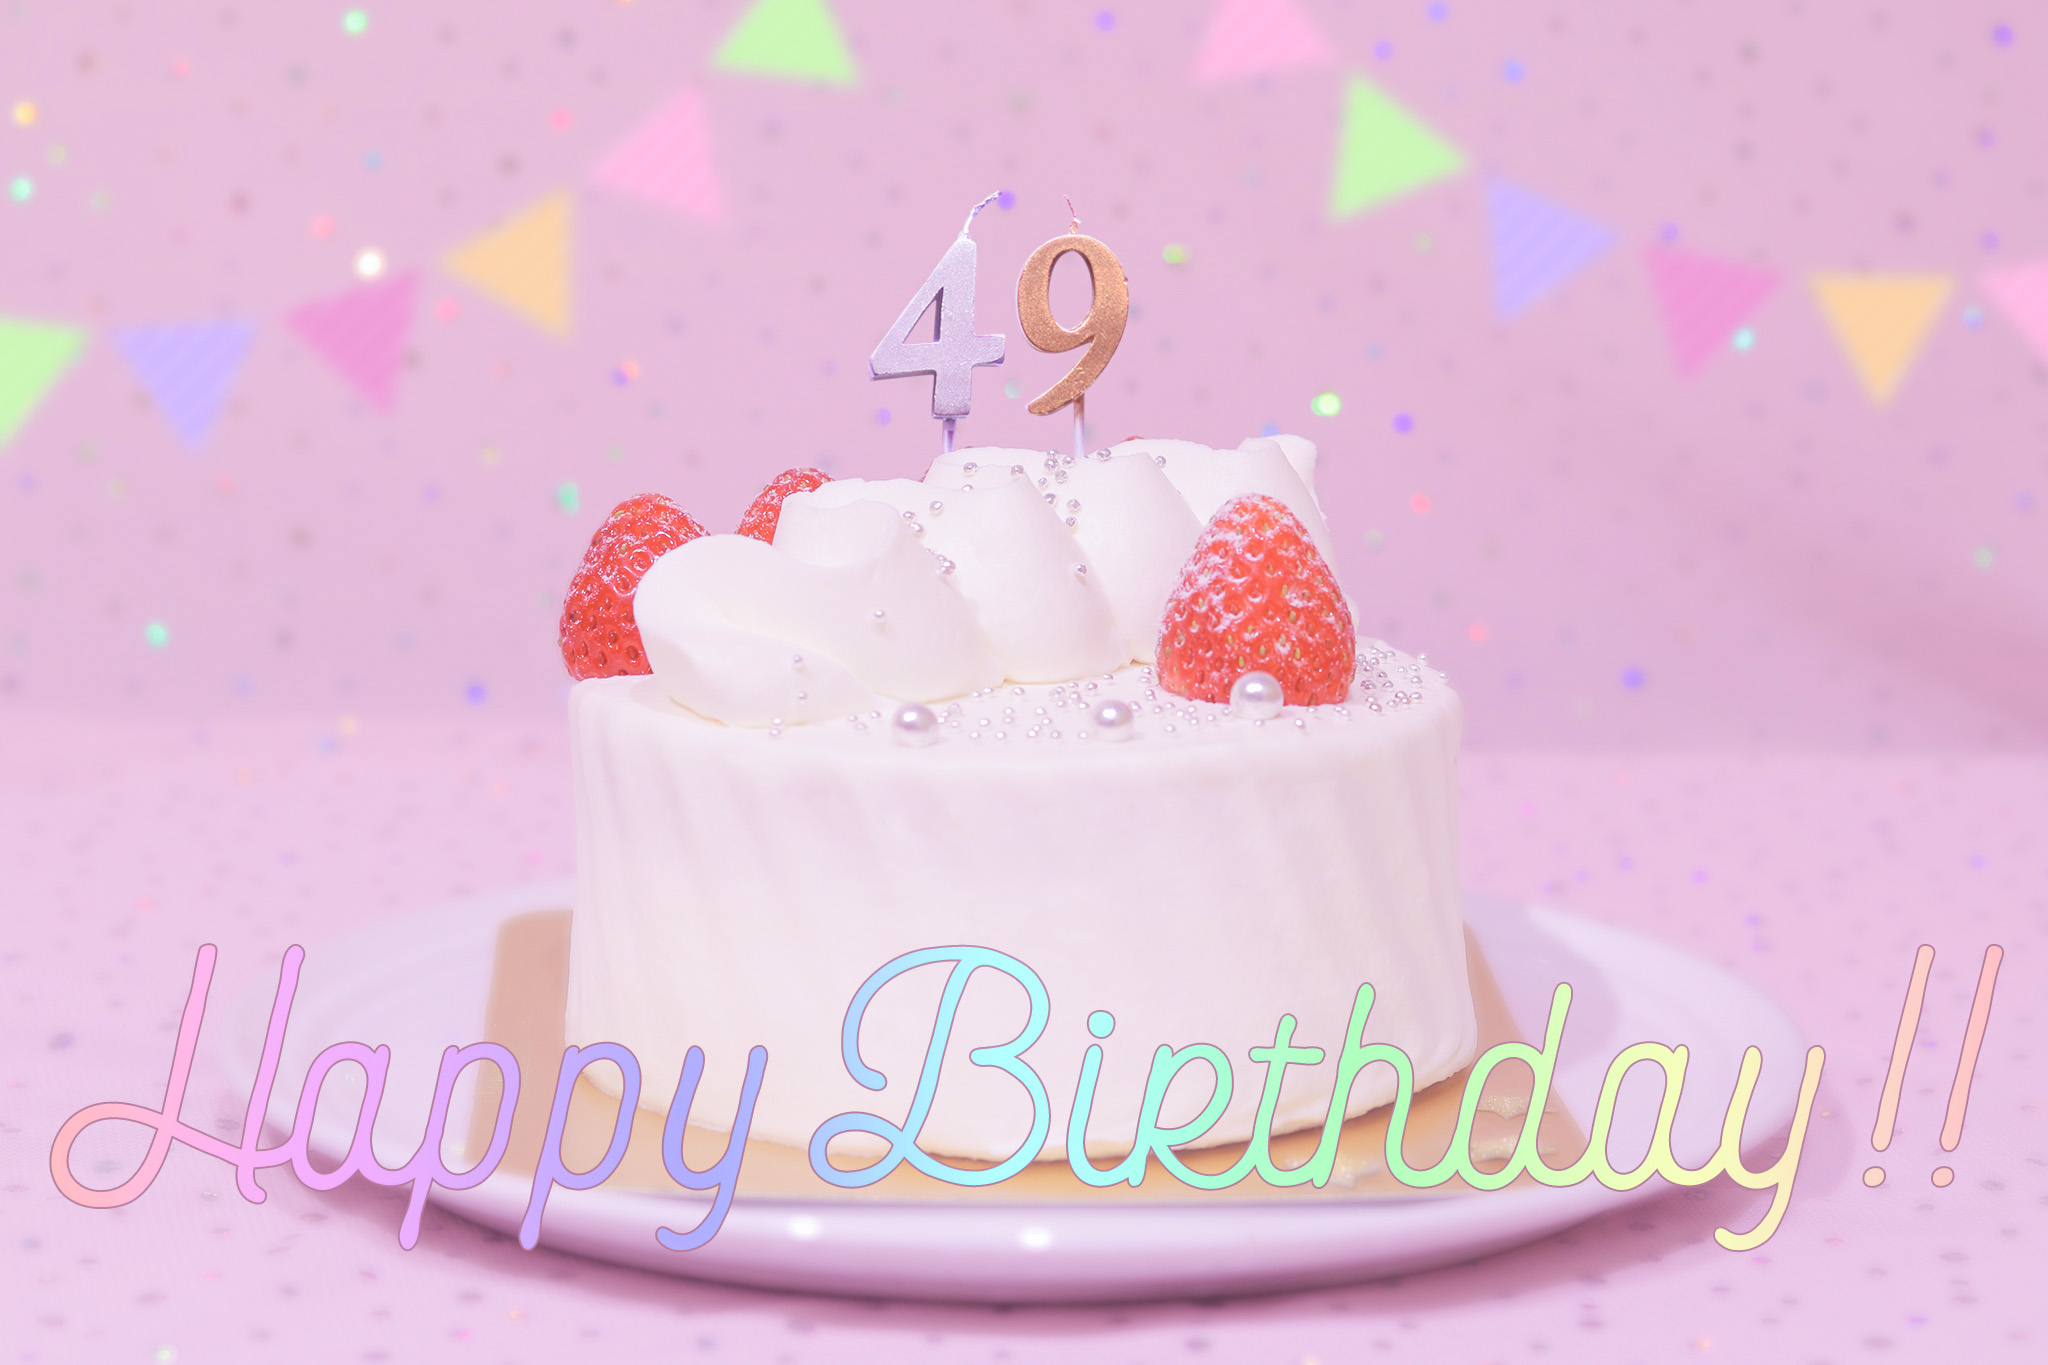 かわいい誕生日画像 ケーキとパステルカラーで可愛くお祝い 49歳編 のフリー画像 おしゃれなフリー写真素材 Girly Drop